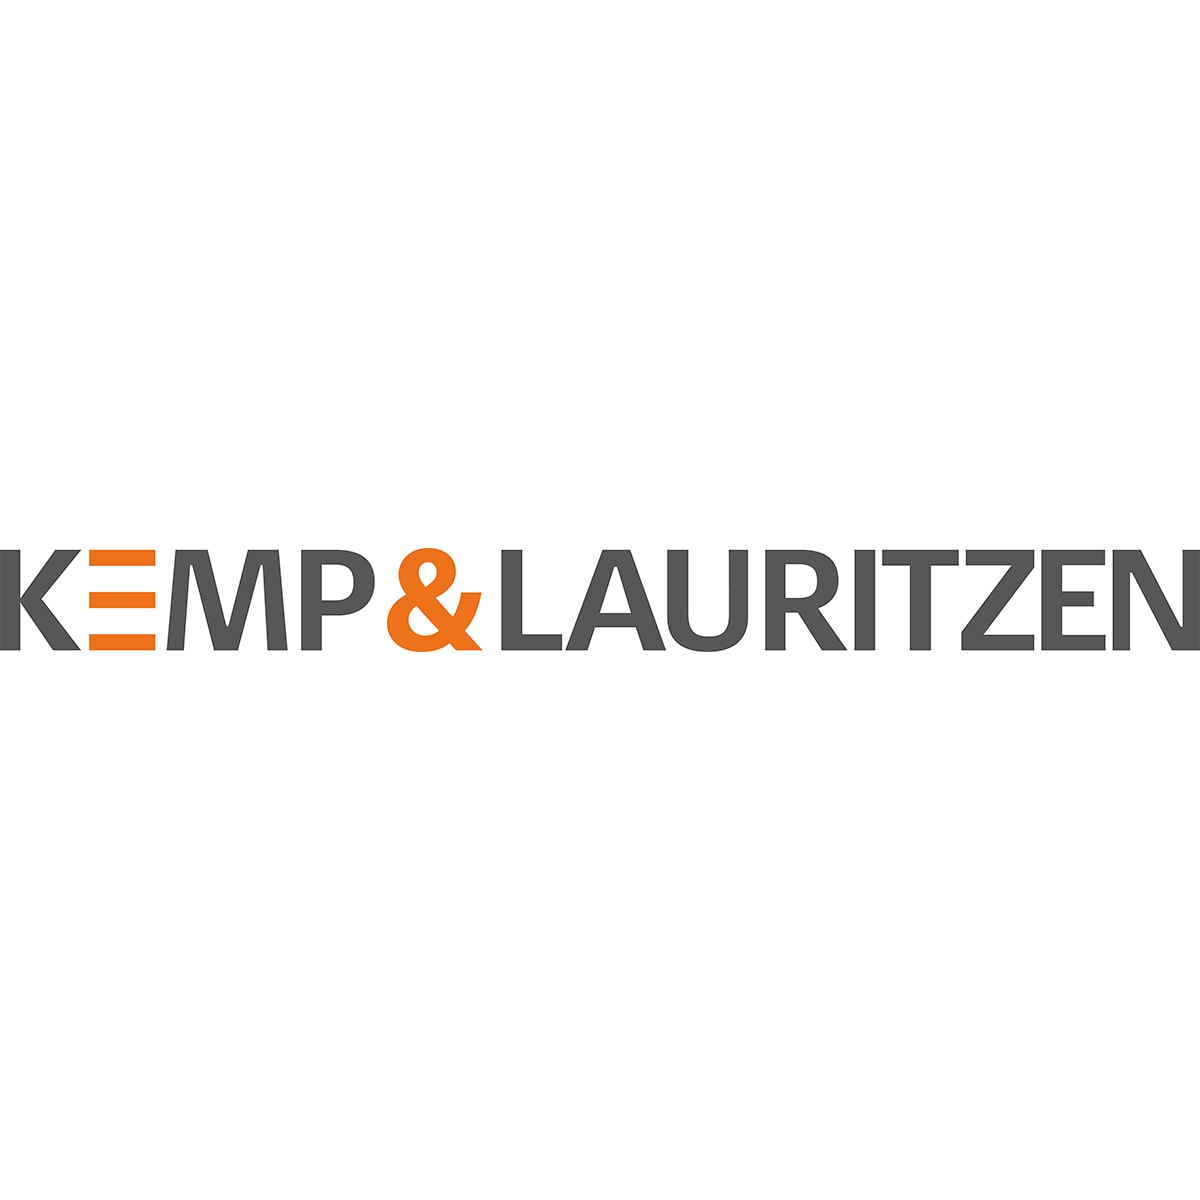 kemp-lauritzen-logo